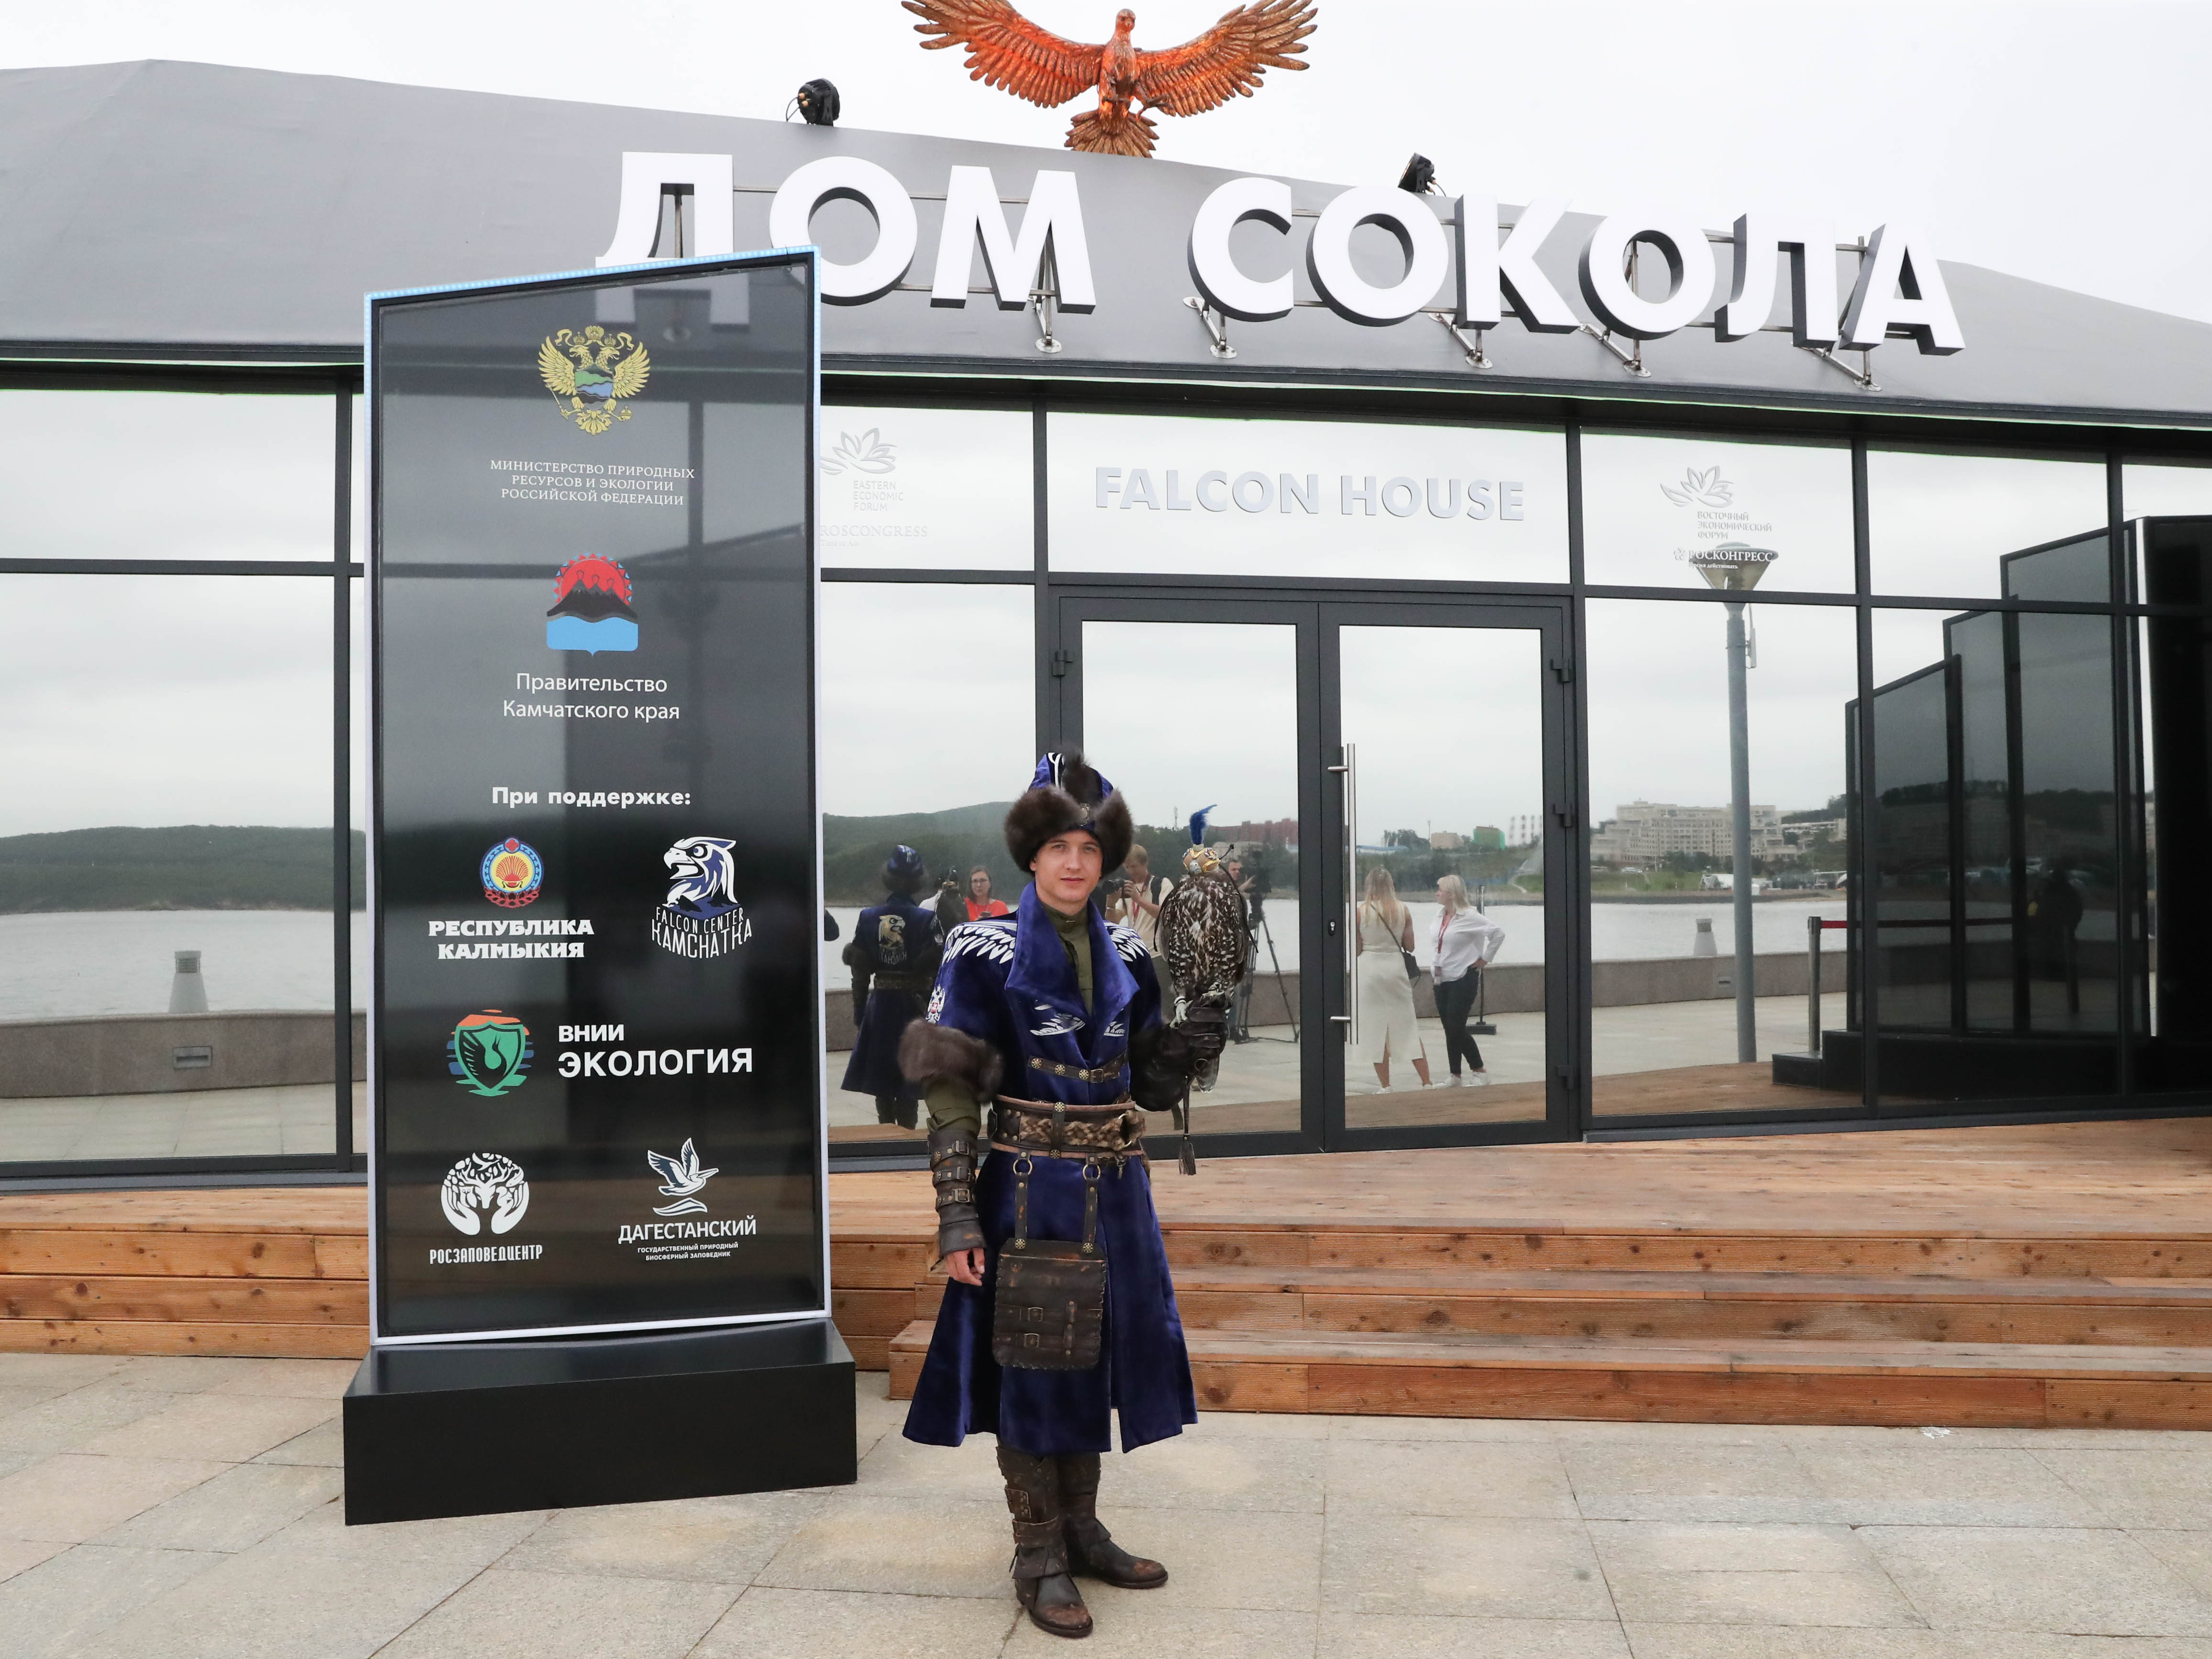 Главный экспонат: камчатские кречеты покорили Восточный экономический форум - фото 1